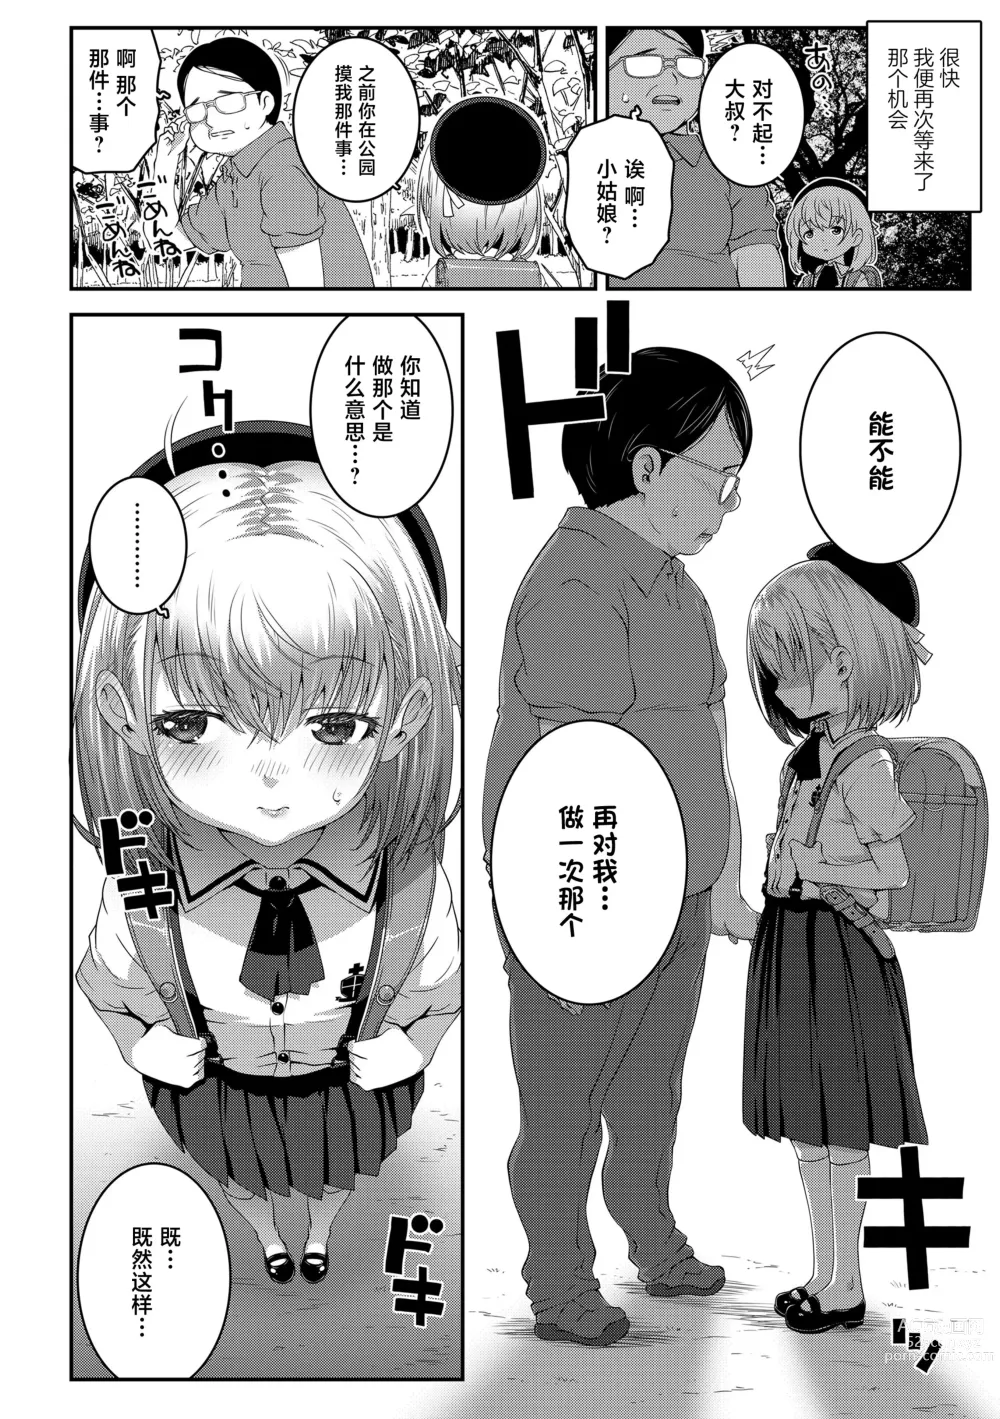 Page 7 of manga Gomen ne Oji-san